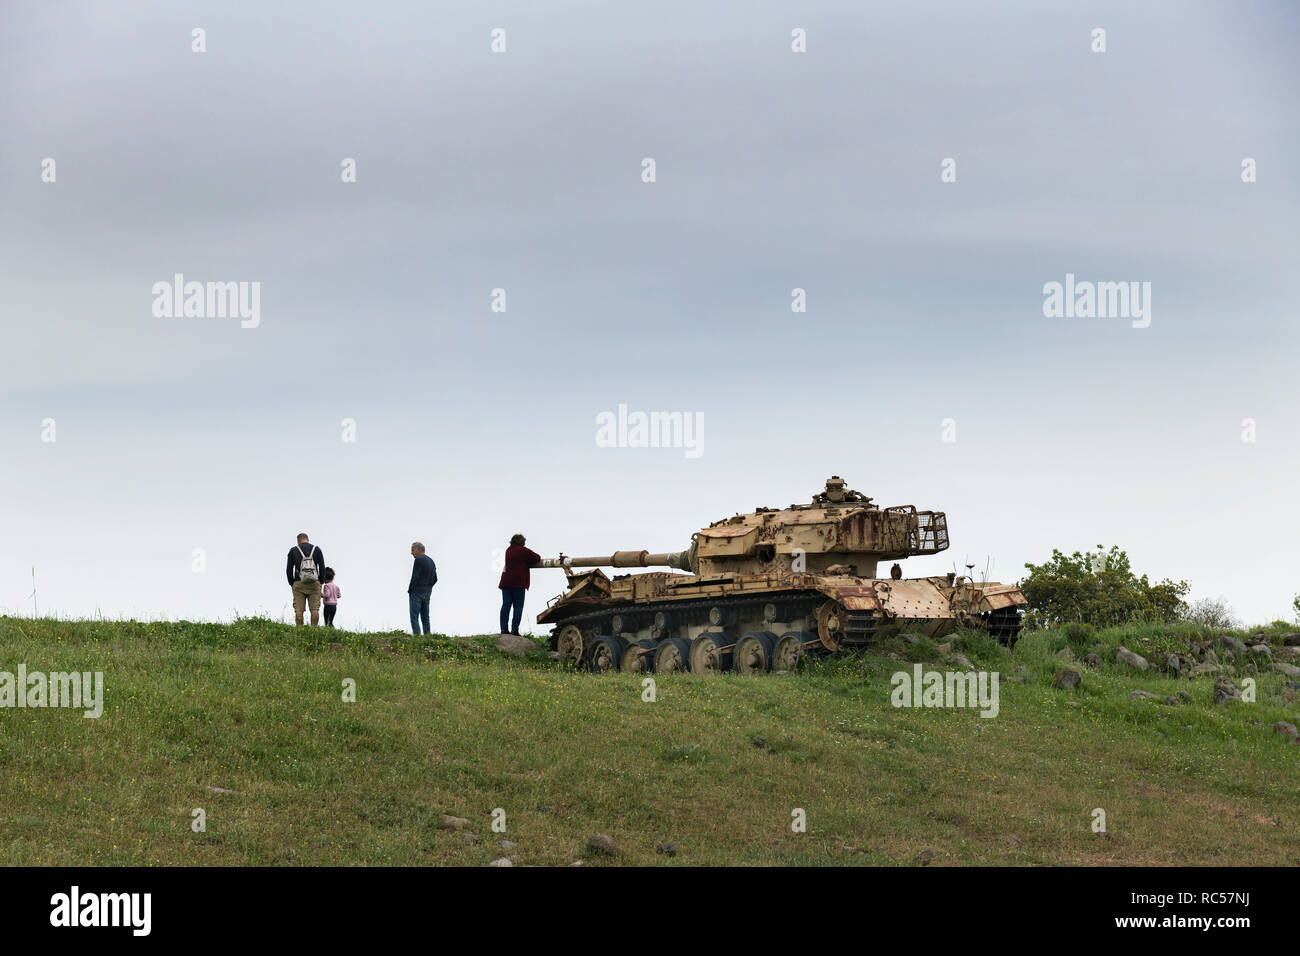 Touriste israélien local autour du char syrien abandonné dans la célèbre « Vallée des larmes ». Région des hauteurs du Golan du Nord. Israël Banque D'Images